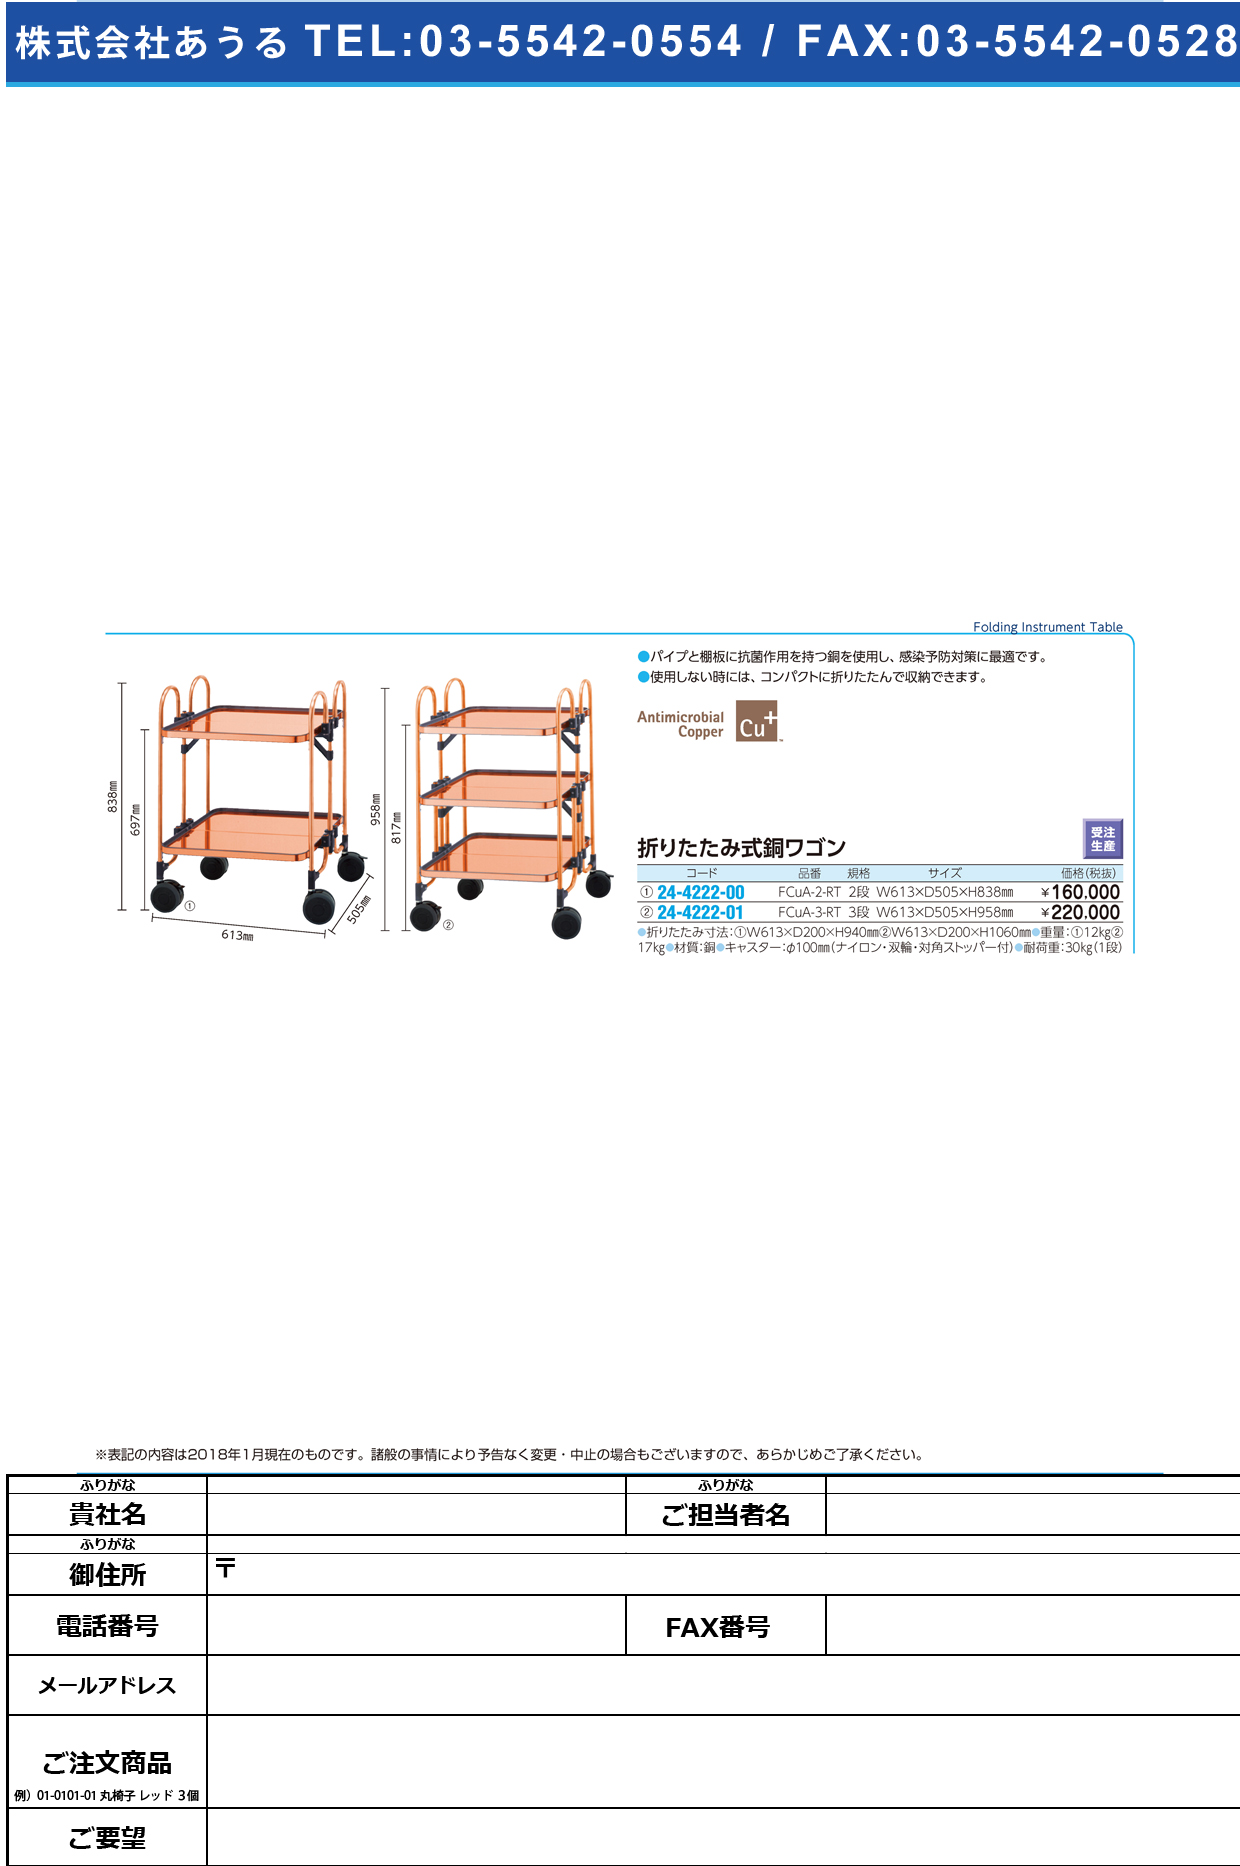 (24-4222-00)折りたたみ式銅ワゴン（２段） FCUA-2-RT ｵﾘﾀﾀﾐｼｷﾄﾞｳﾜｺﾞﾝ(2ﾀﾞﾝ)【1台単位】【2018年カタログ商品】